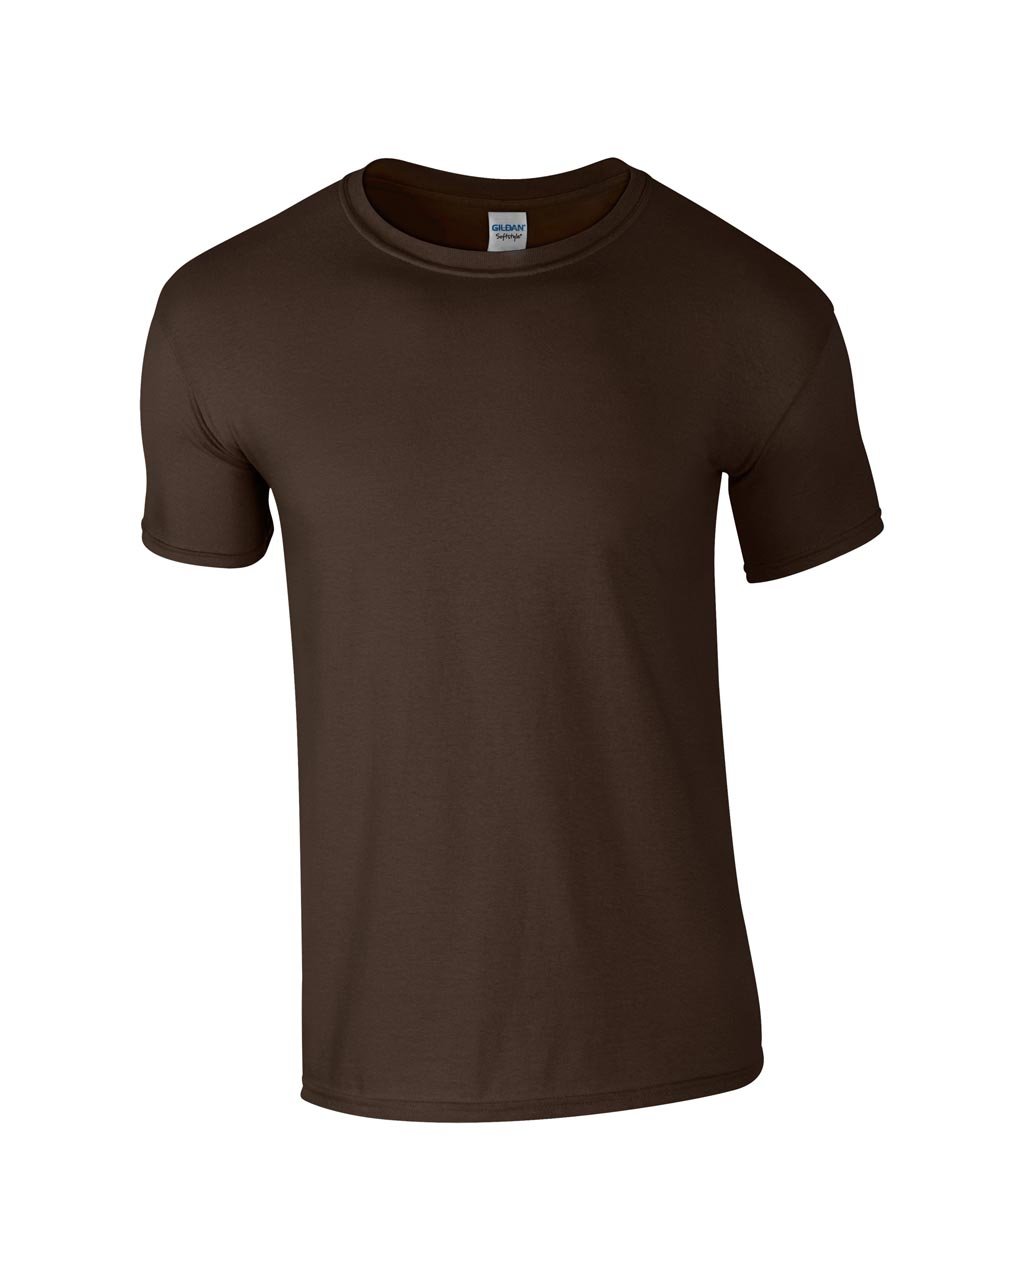 Tricou barbati Softstylesoftstyle-adult-t-shirt-3380.jpg